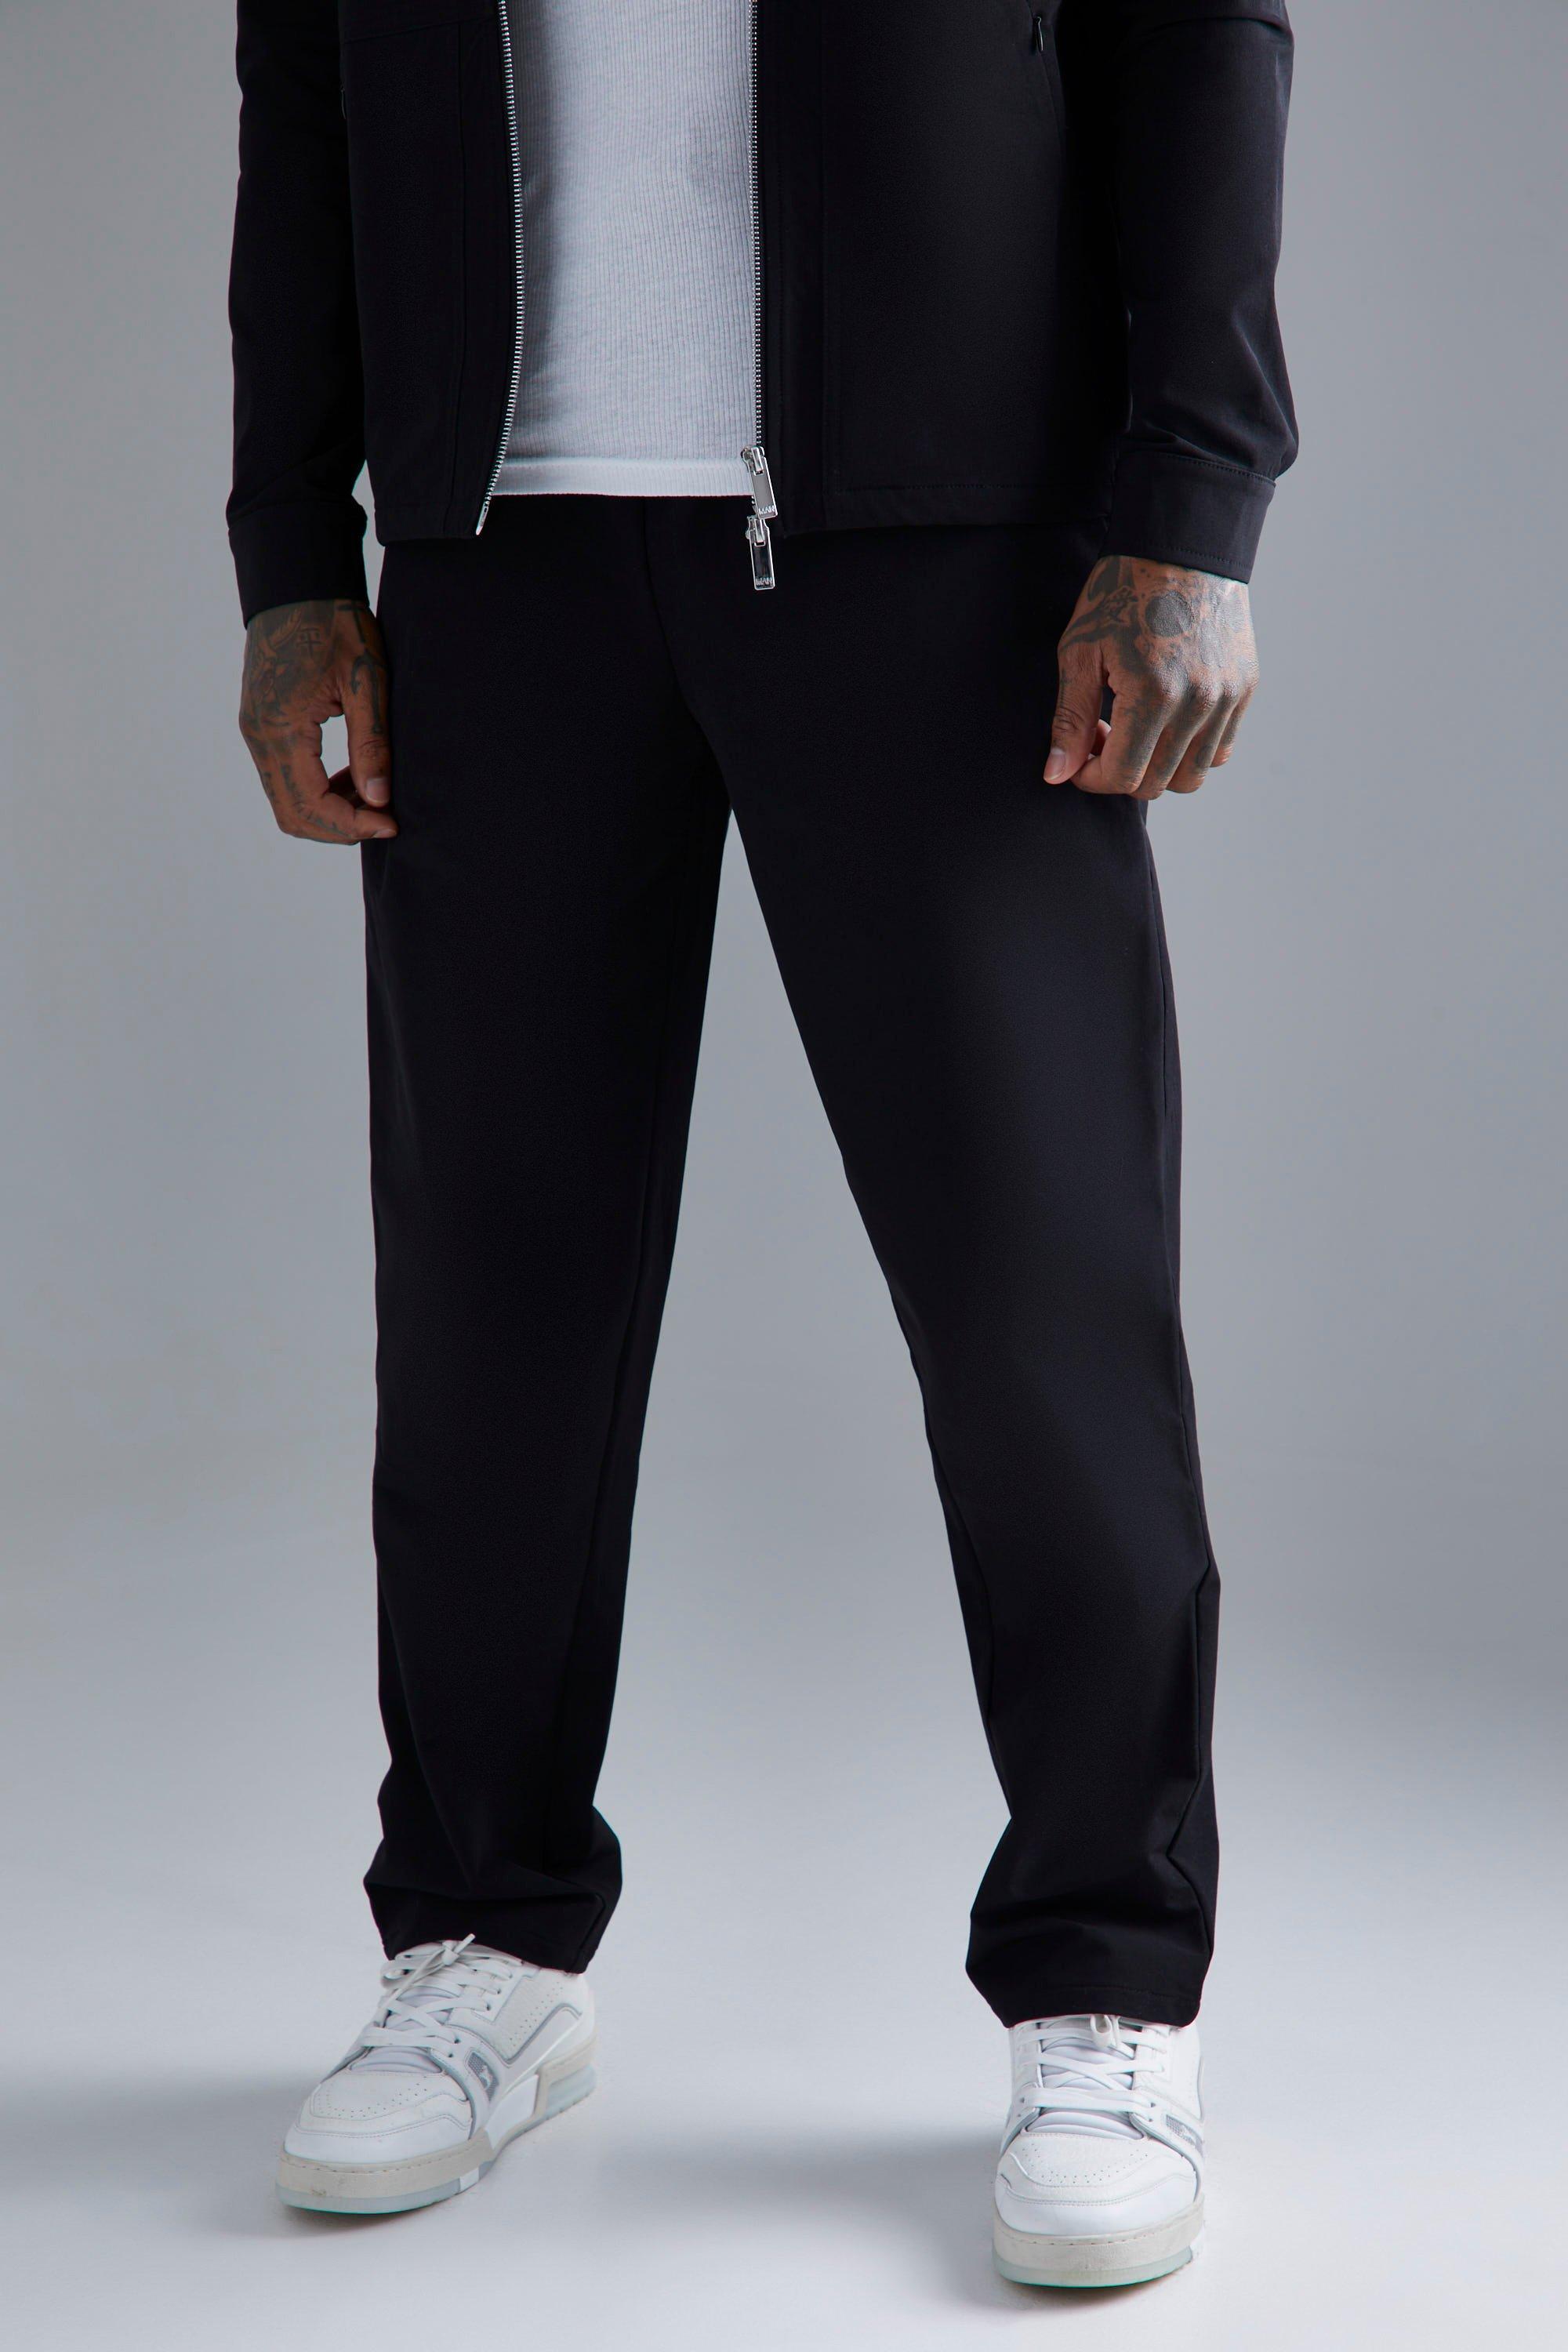 pantalon droit technique en nylon à taille élastique homme - noir - s, noir